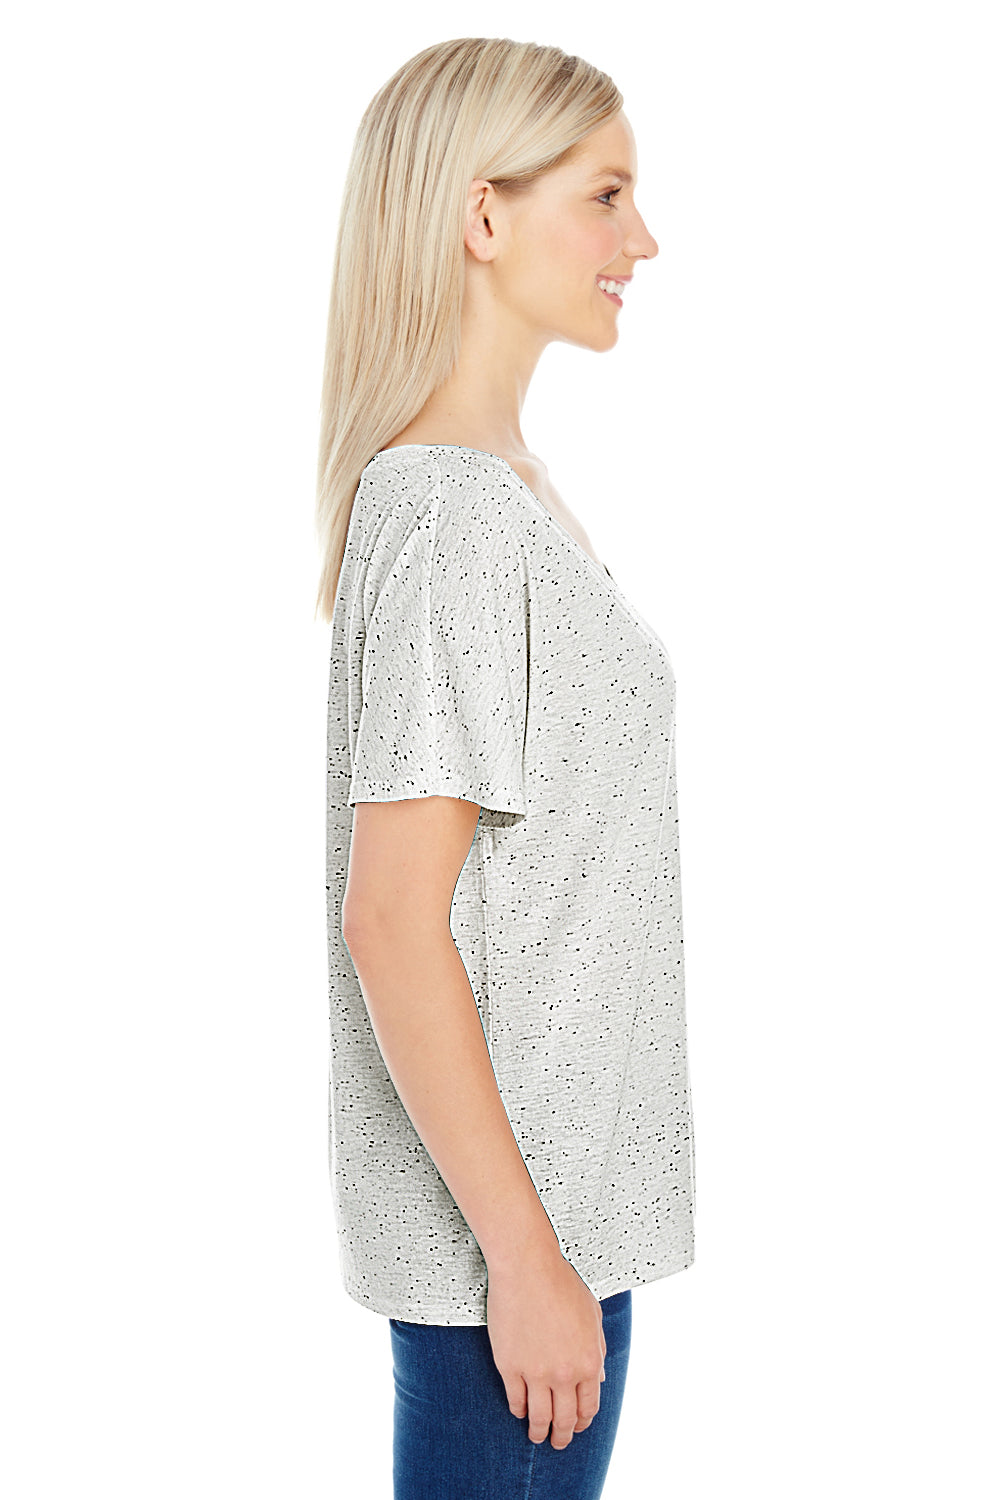 Threadfast Apparel 203FV Womens Fleck Short Sleeve V-Neck T-Shirt Cream Side